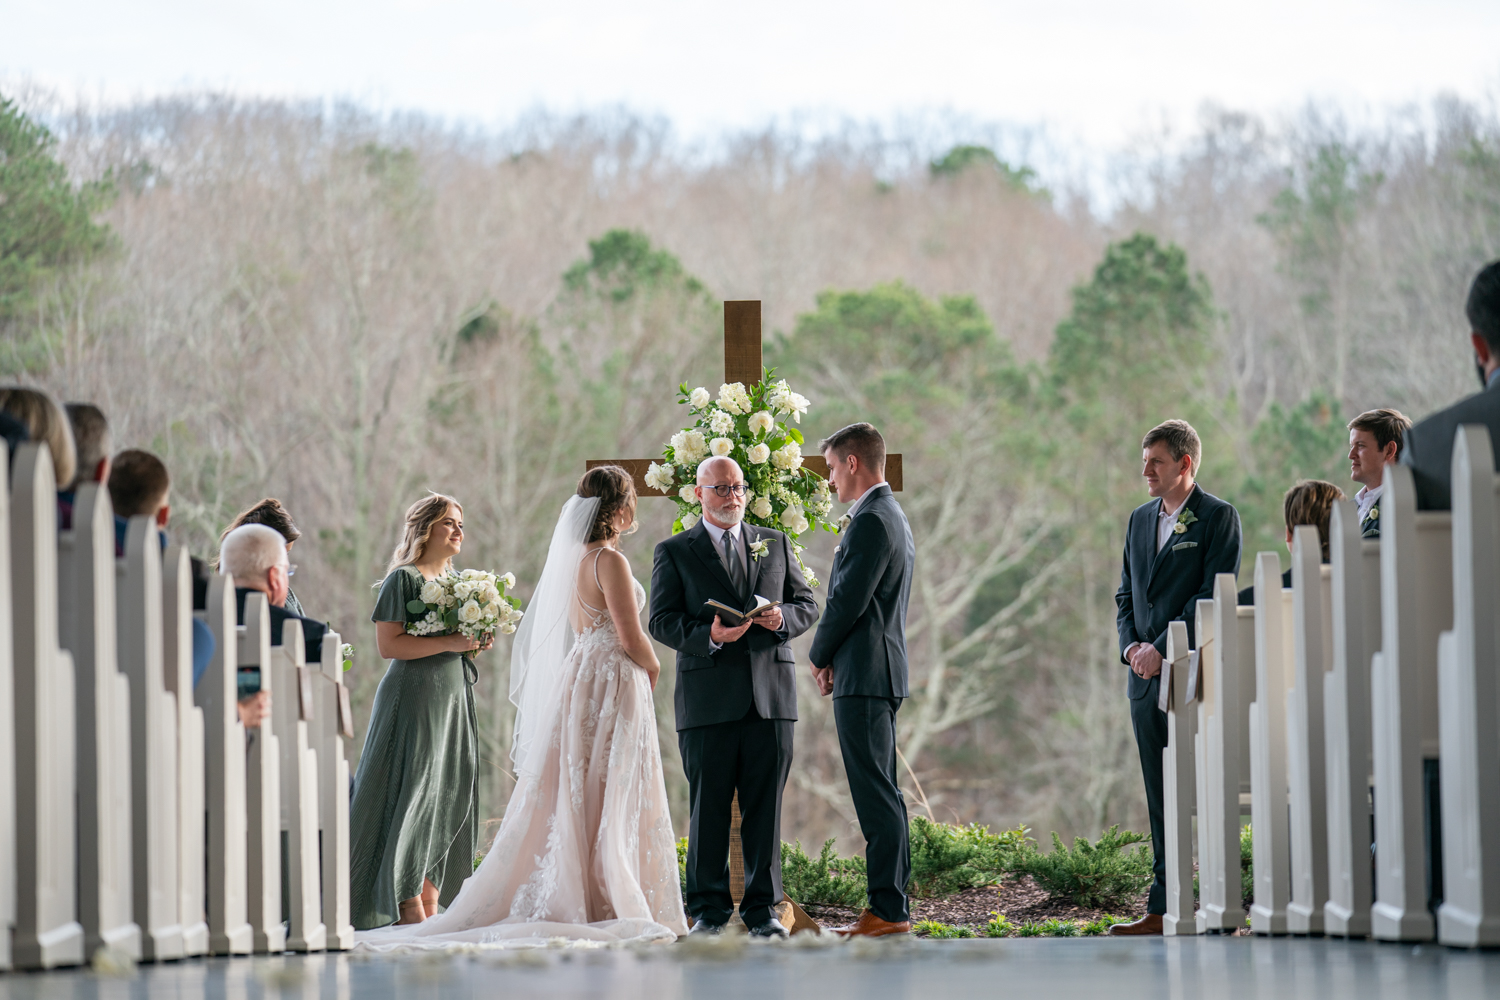 ceremony at The Greystone Estate Wedding Venue